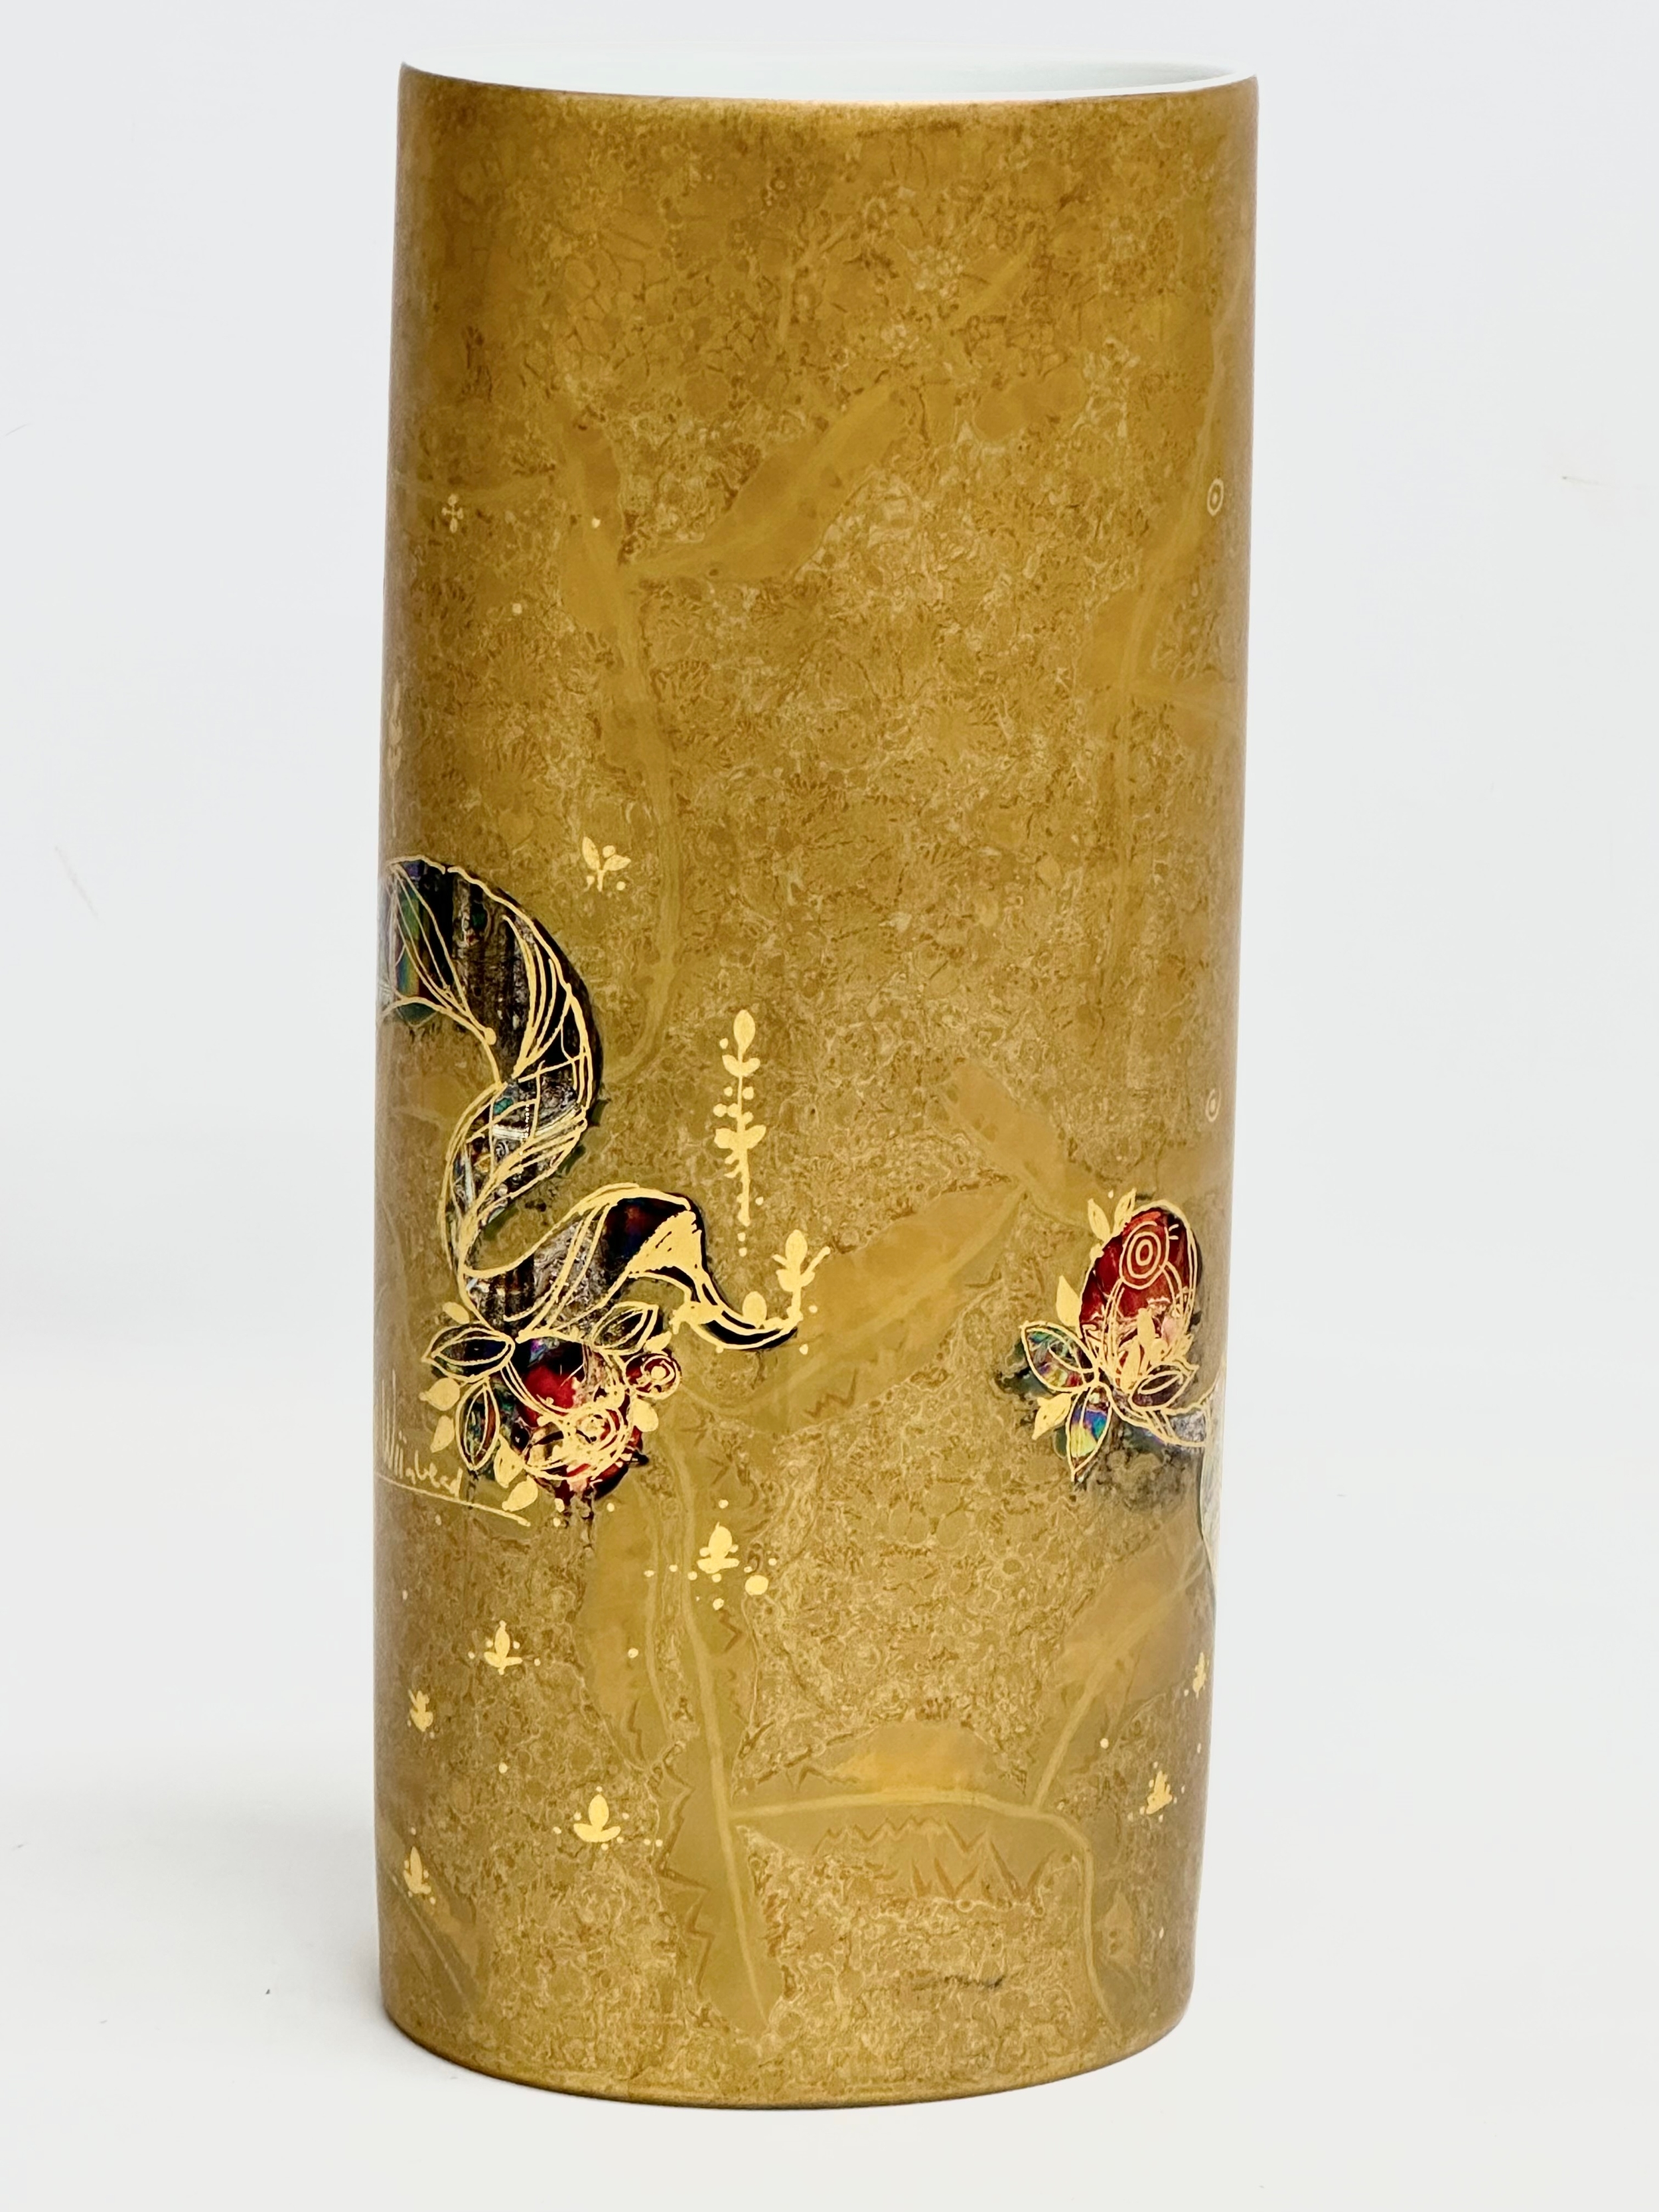 A Rosenthal Studio-Line vase designed by Bjorn Wiinblad. 28.5cm. - Image 3 of 4